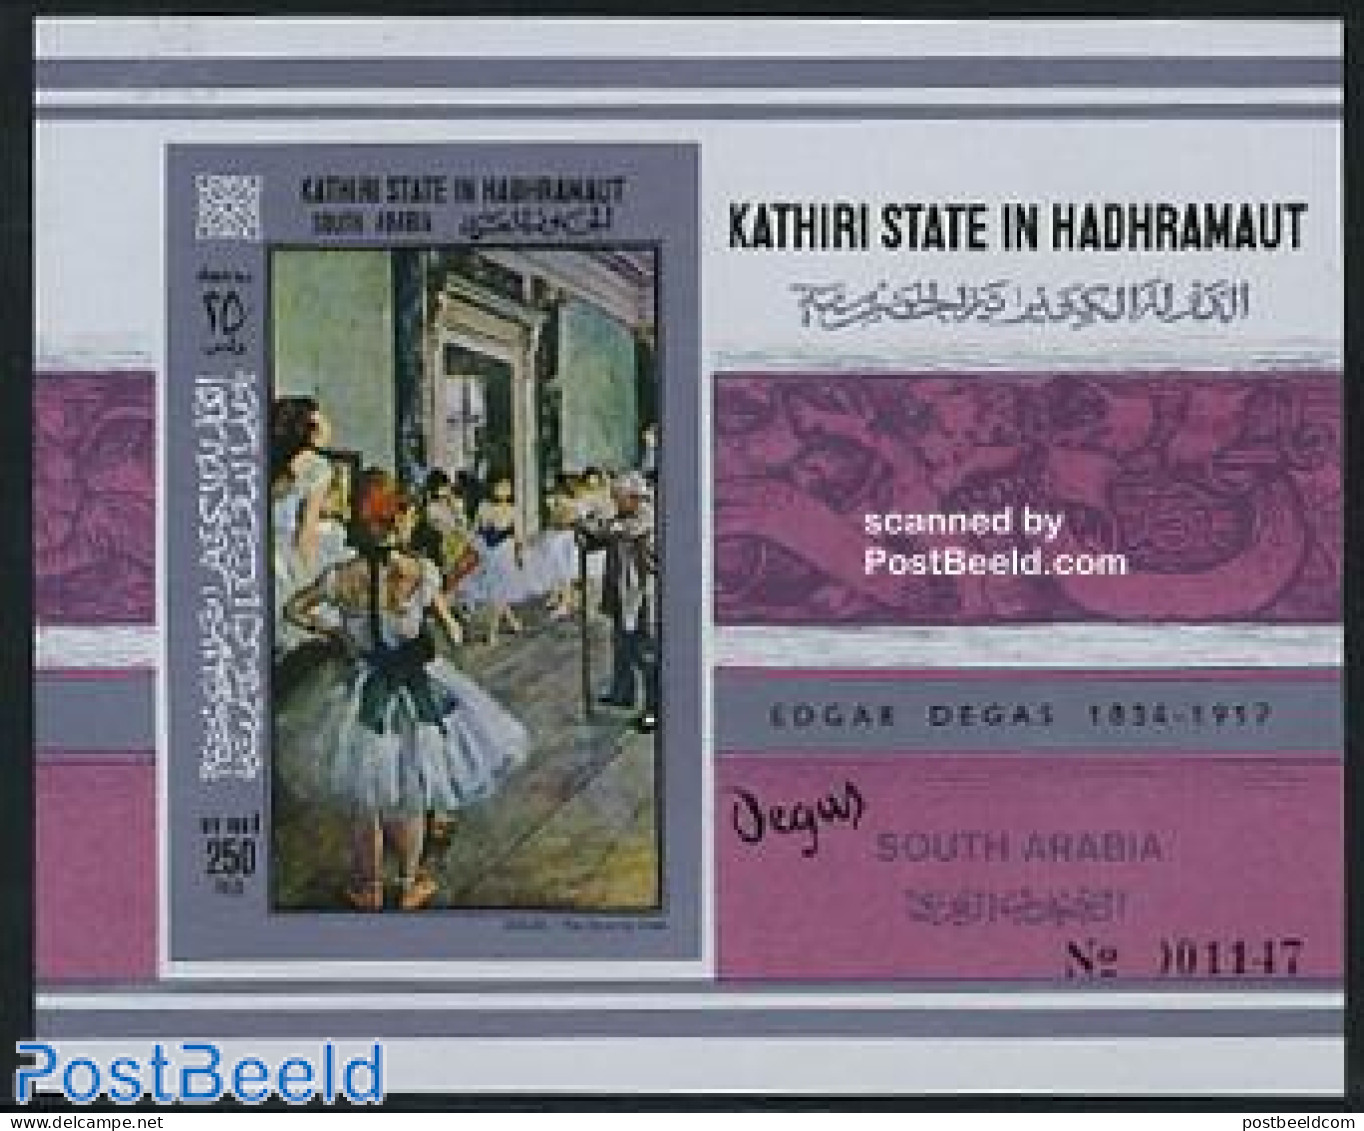 Aden 1967 KSiH, Degas Painting S/s Imperforated, Mint NH, Performance Art - Dance & Ballet - Art - Edgar Degas - Moder.. - Danse